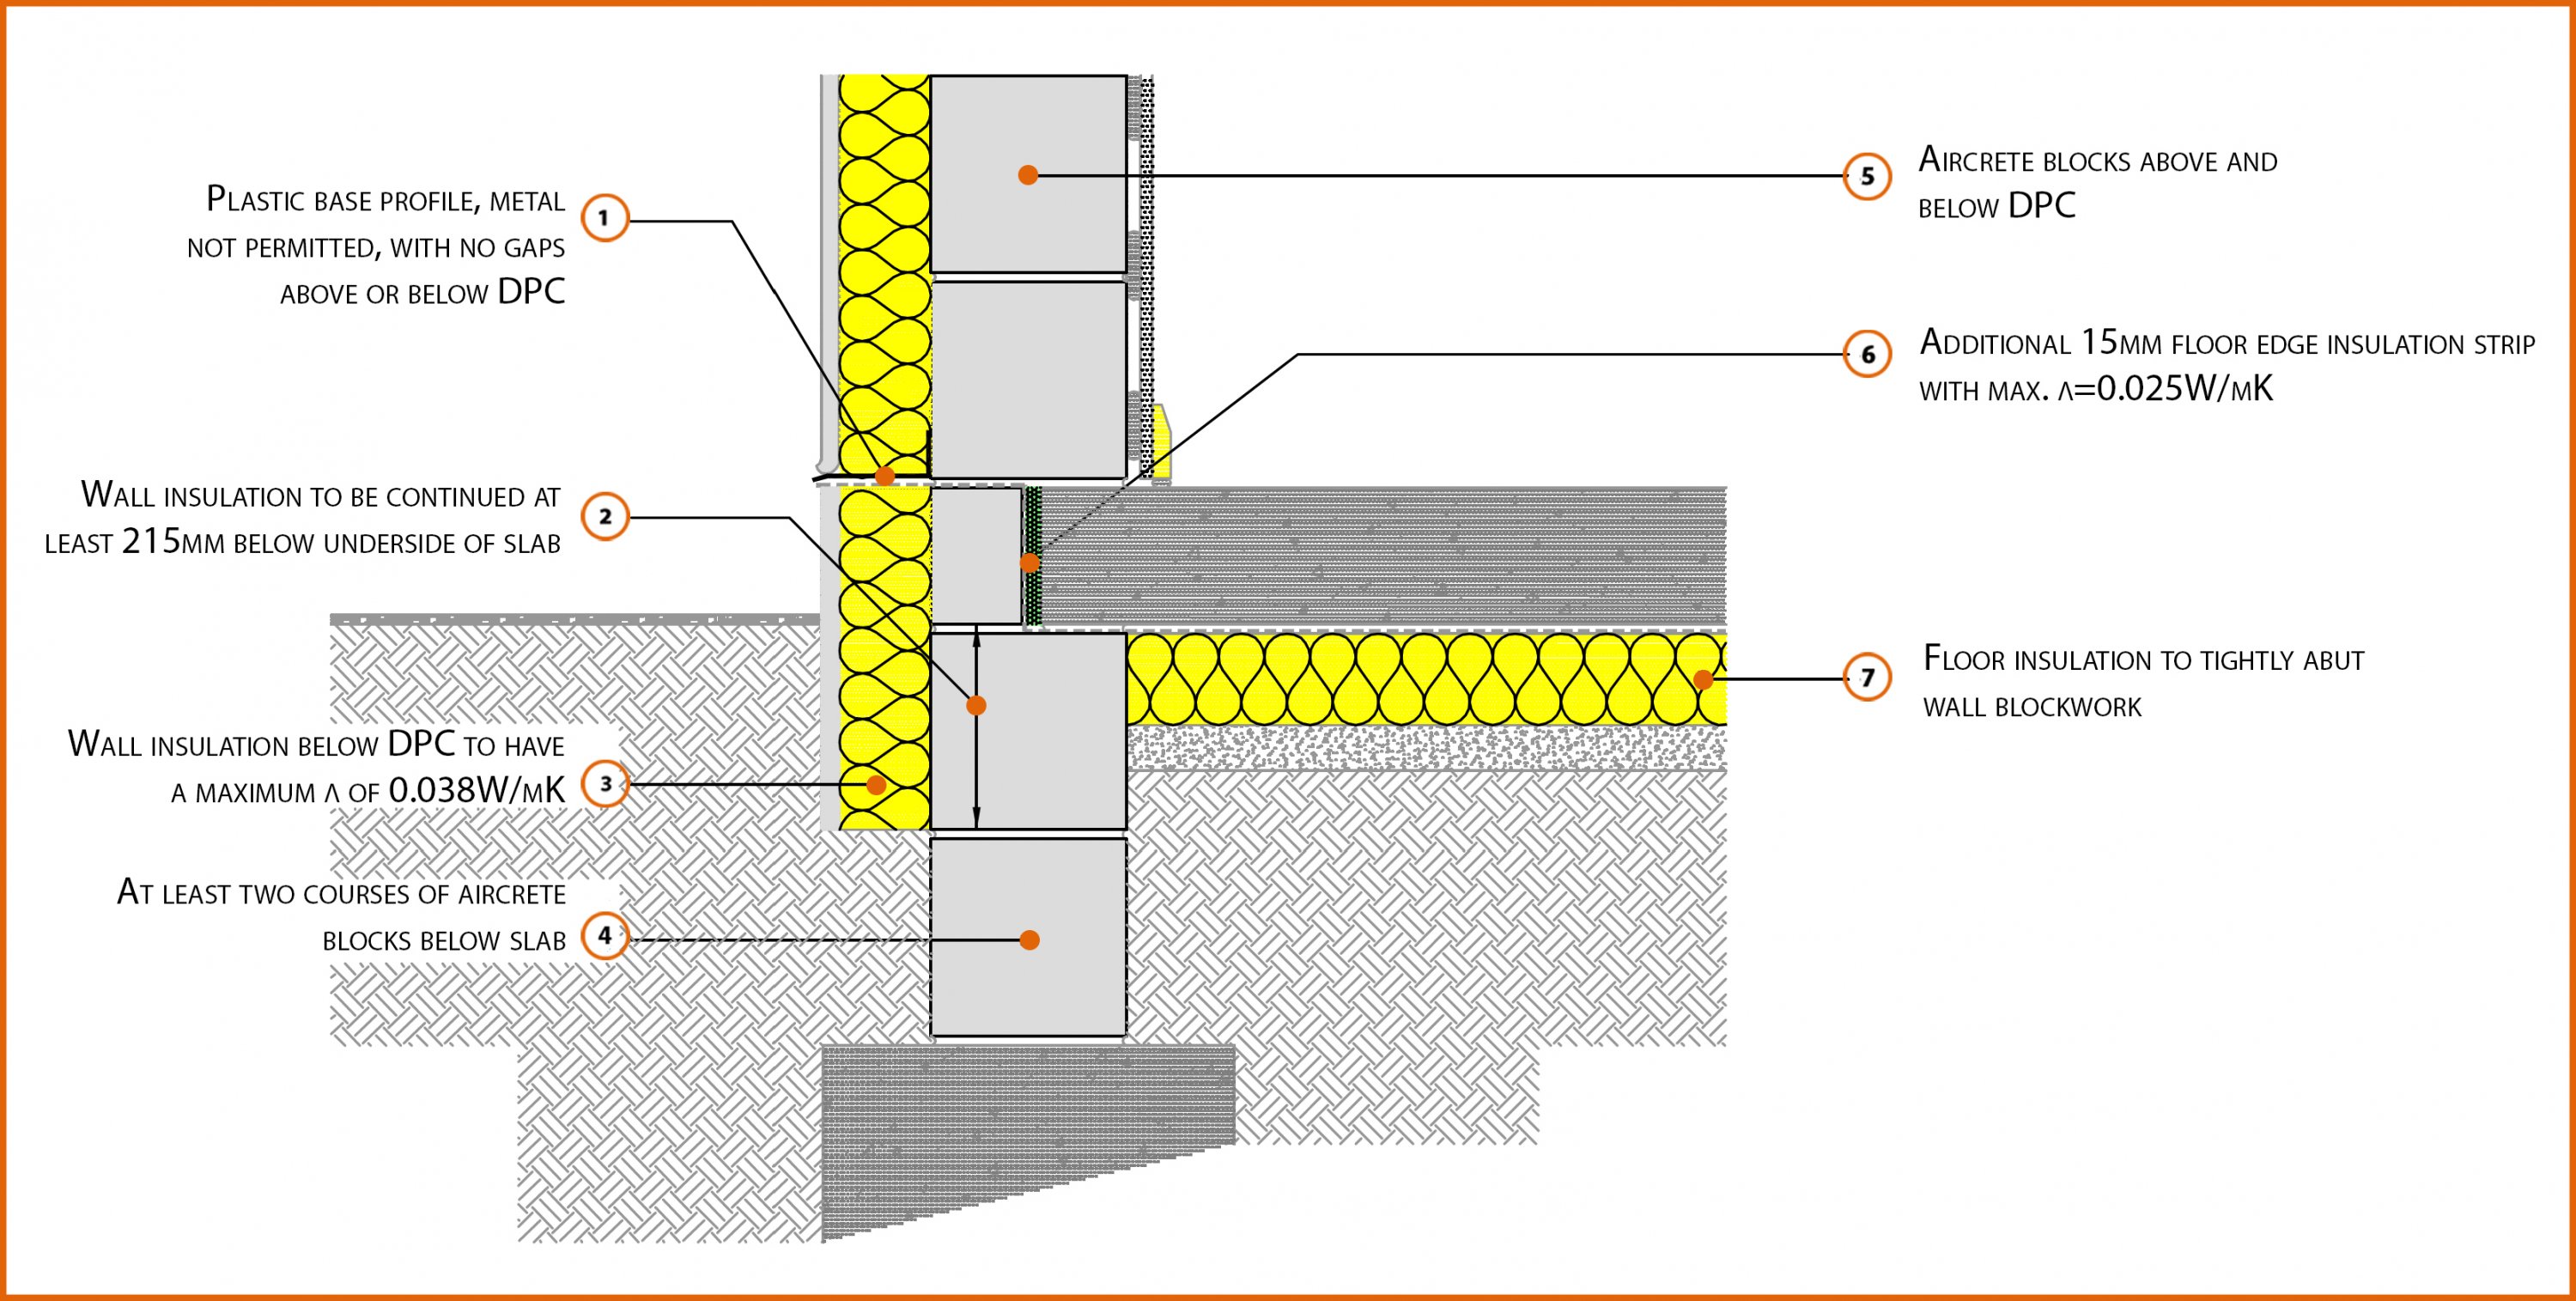 E5smew22 Suspended In Situ Concrete Floor Insulation Below Slab Labc